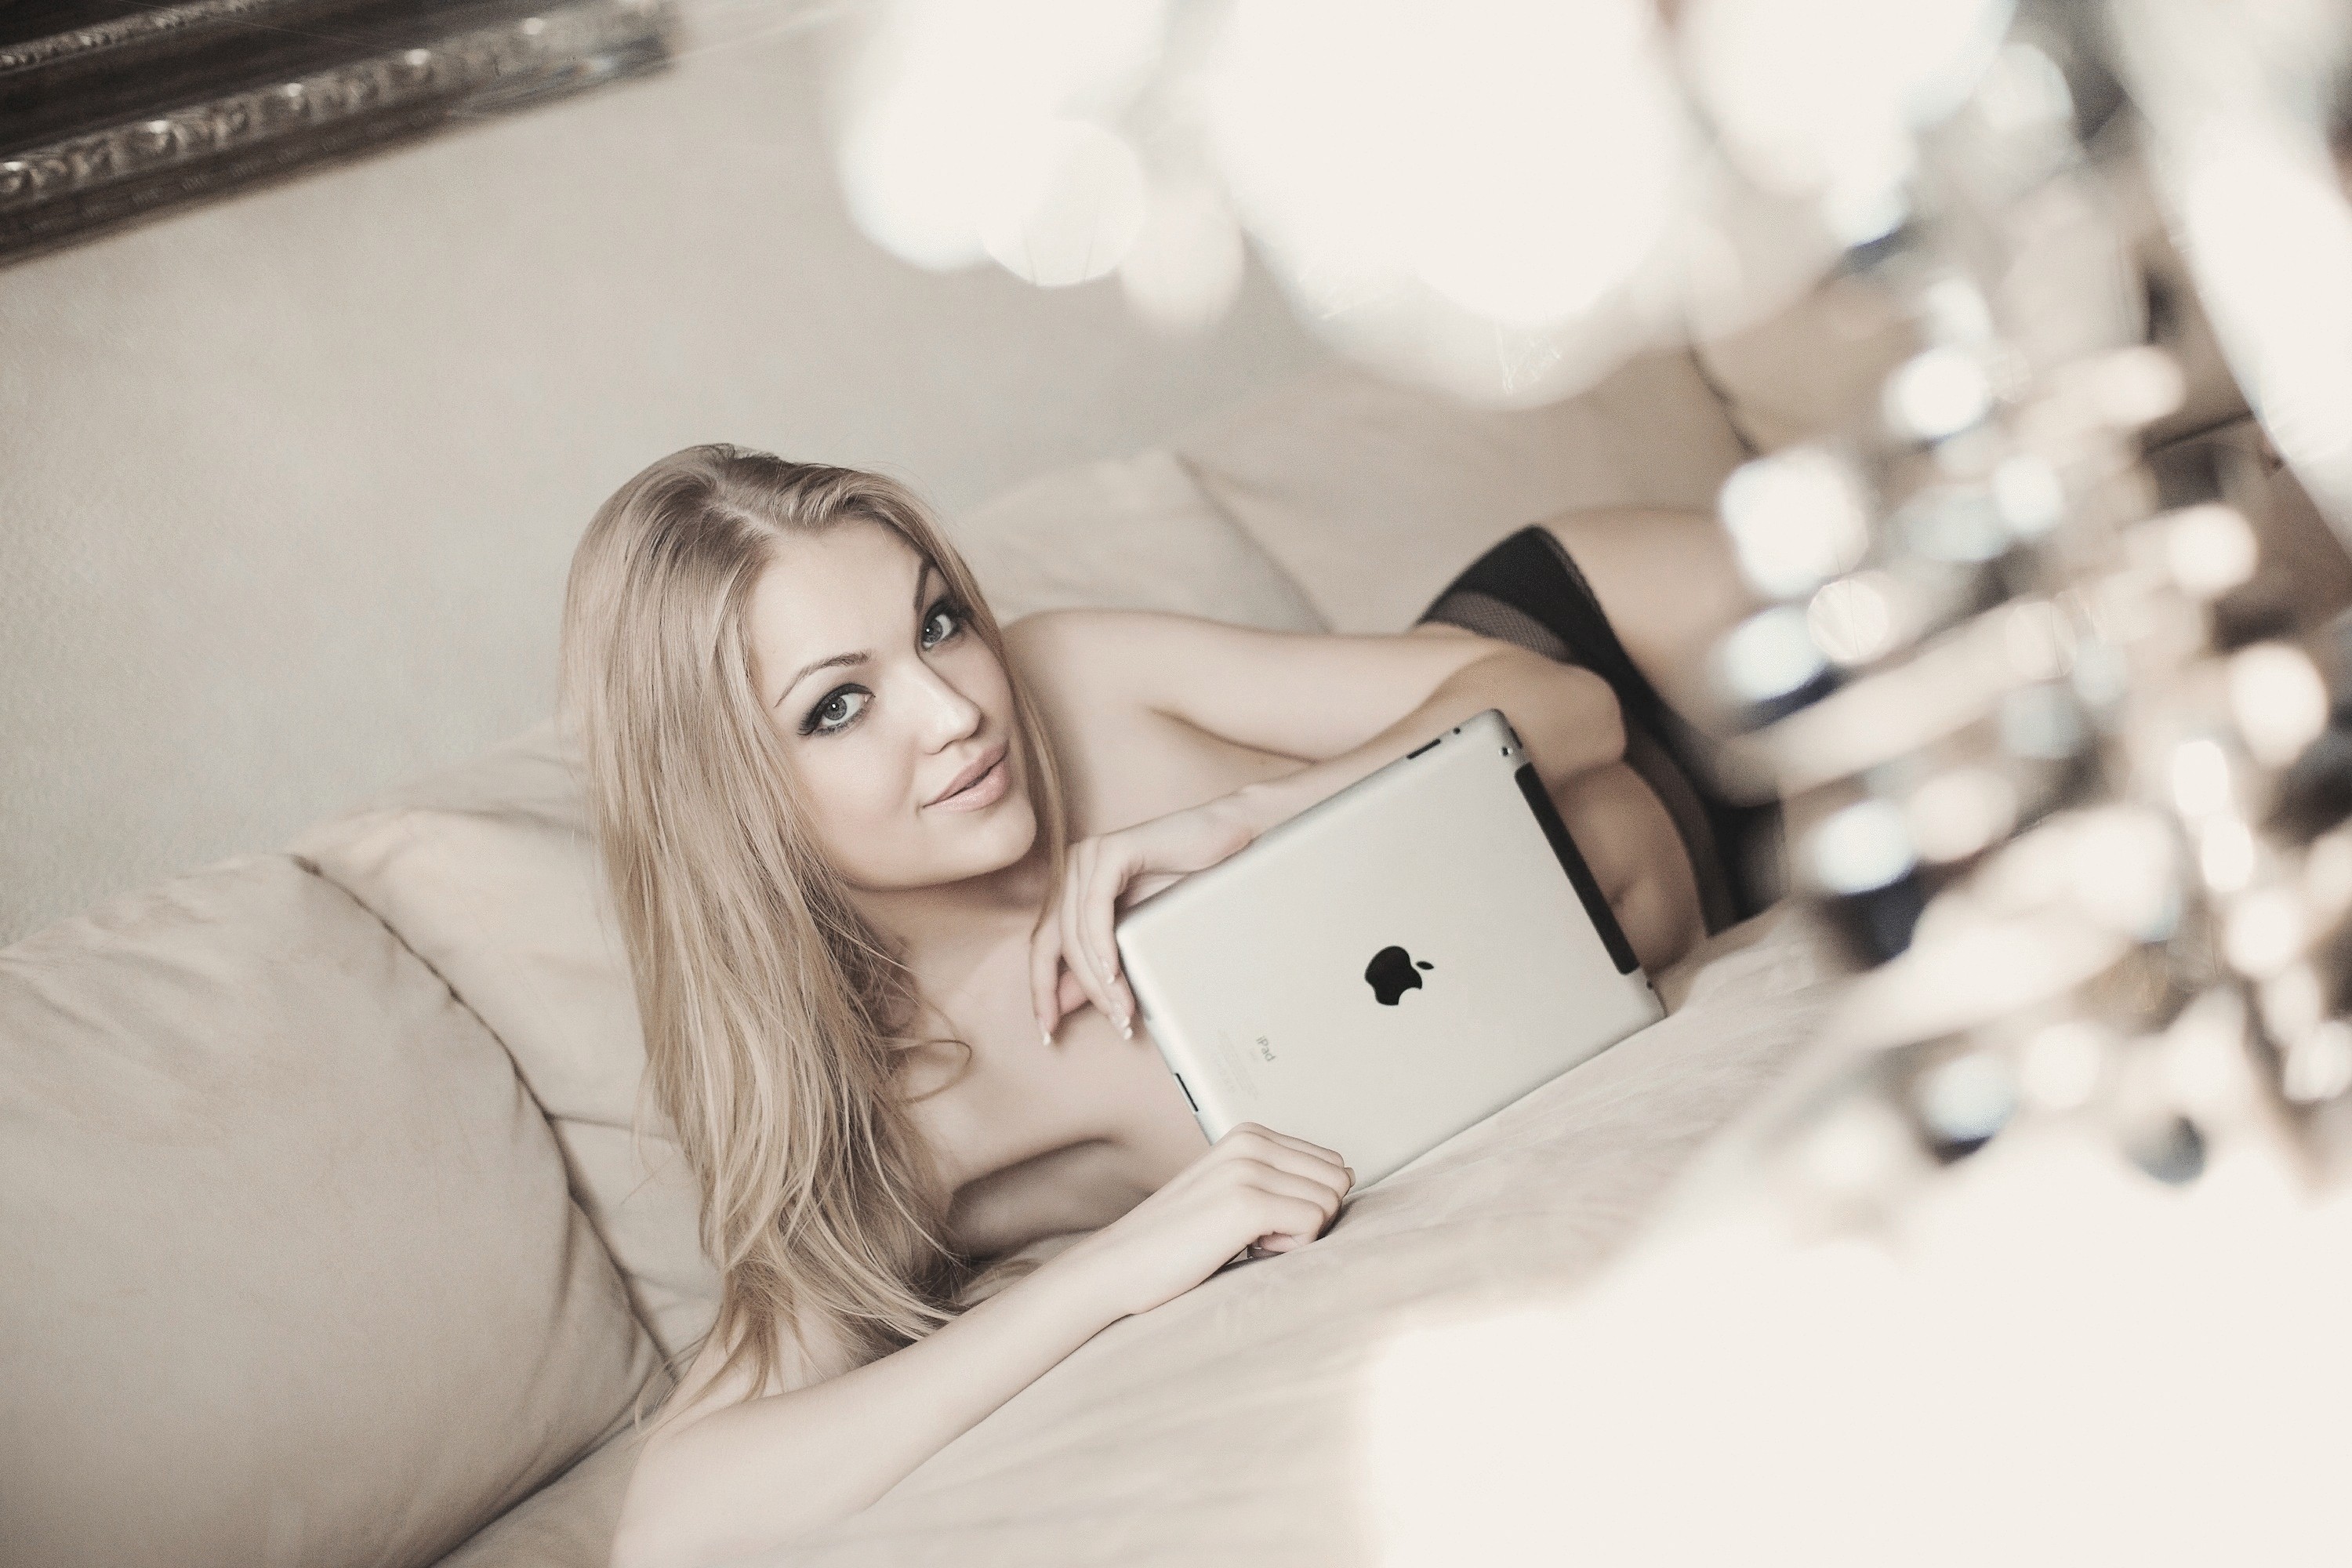 Вебкам блонд. Девушка вебкам модель. Модель ноутбука. Модель за ноутбуком. Модель девушка с ноутбуком.